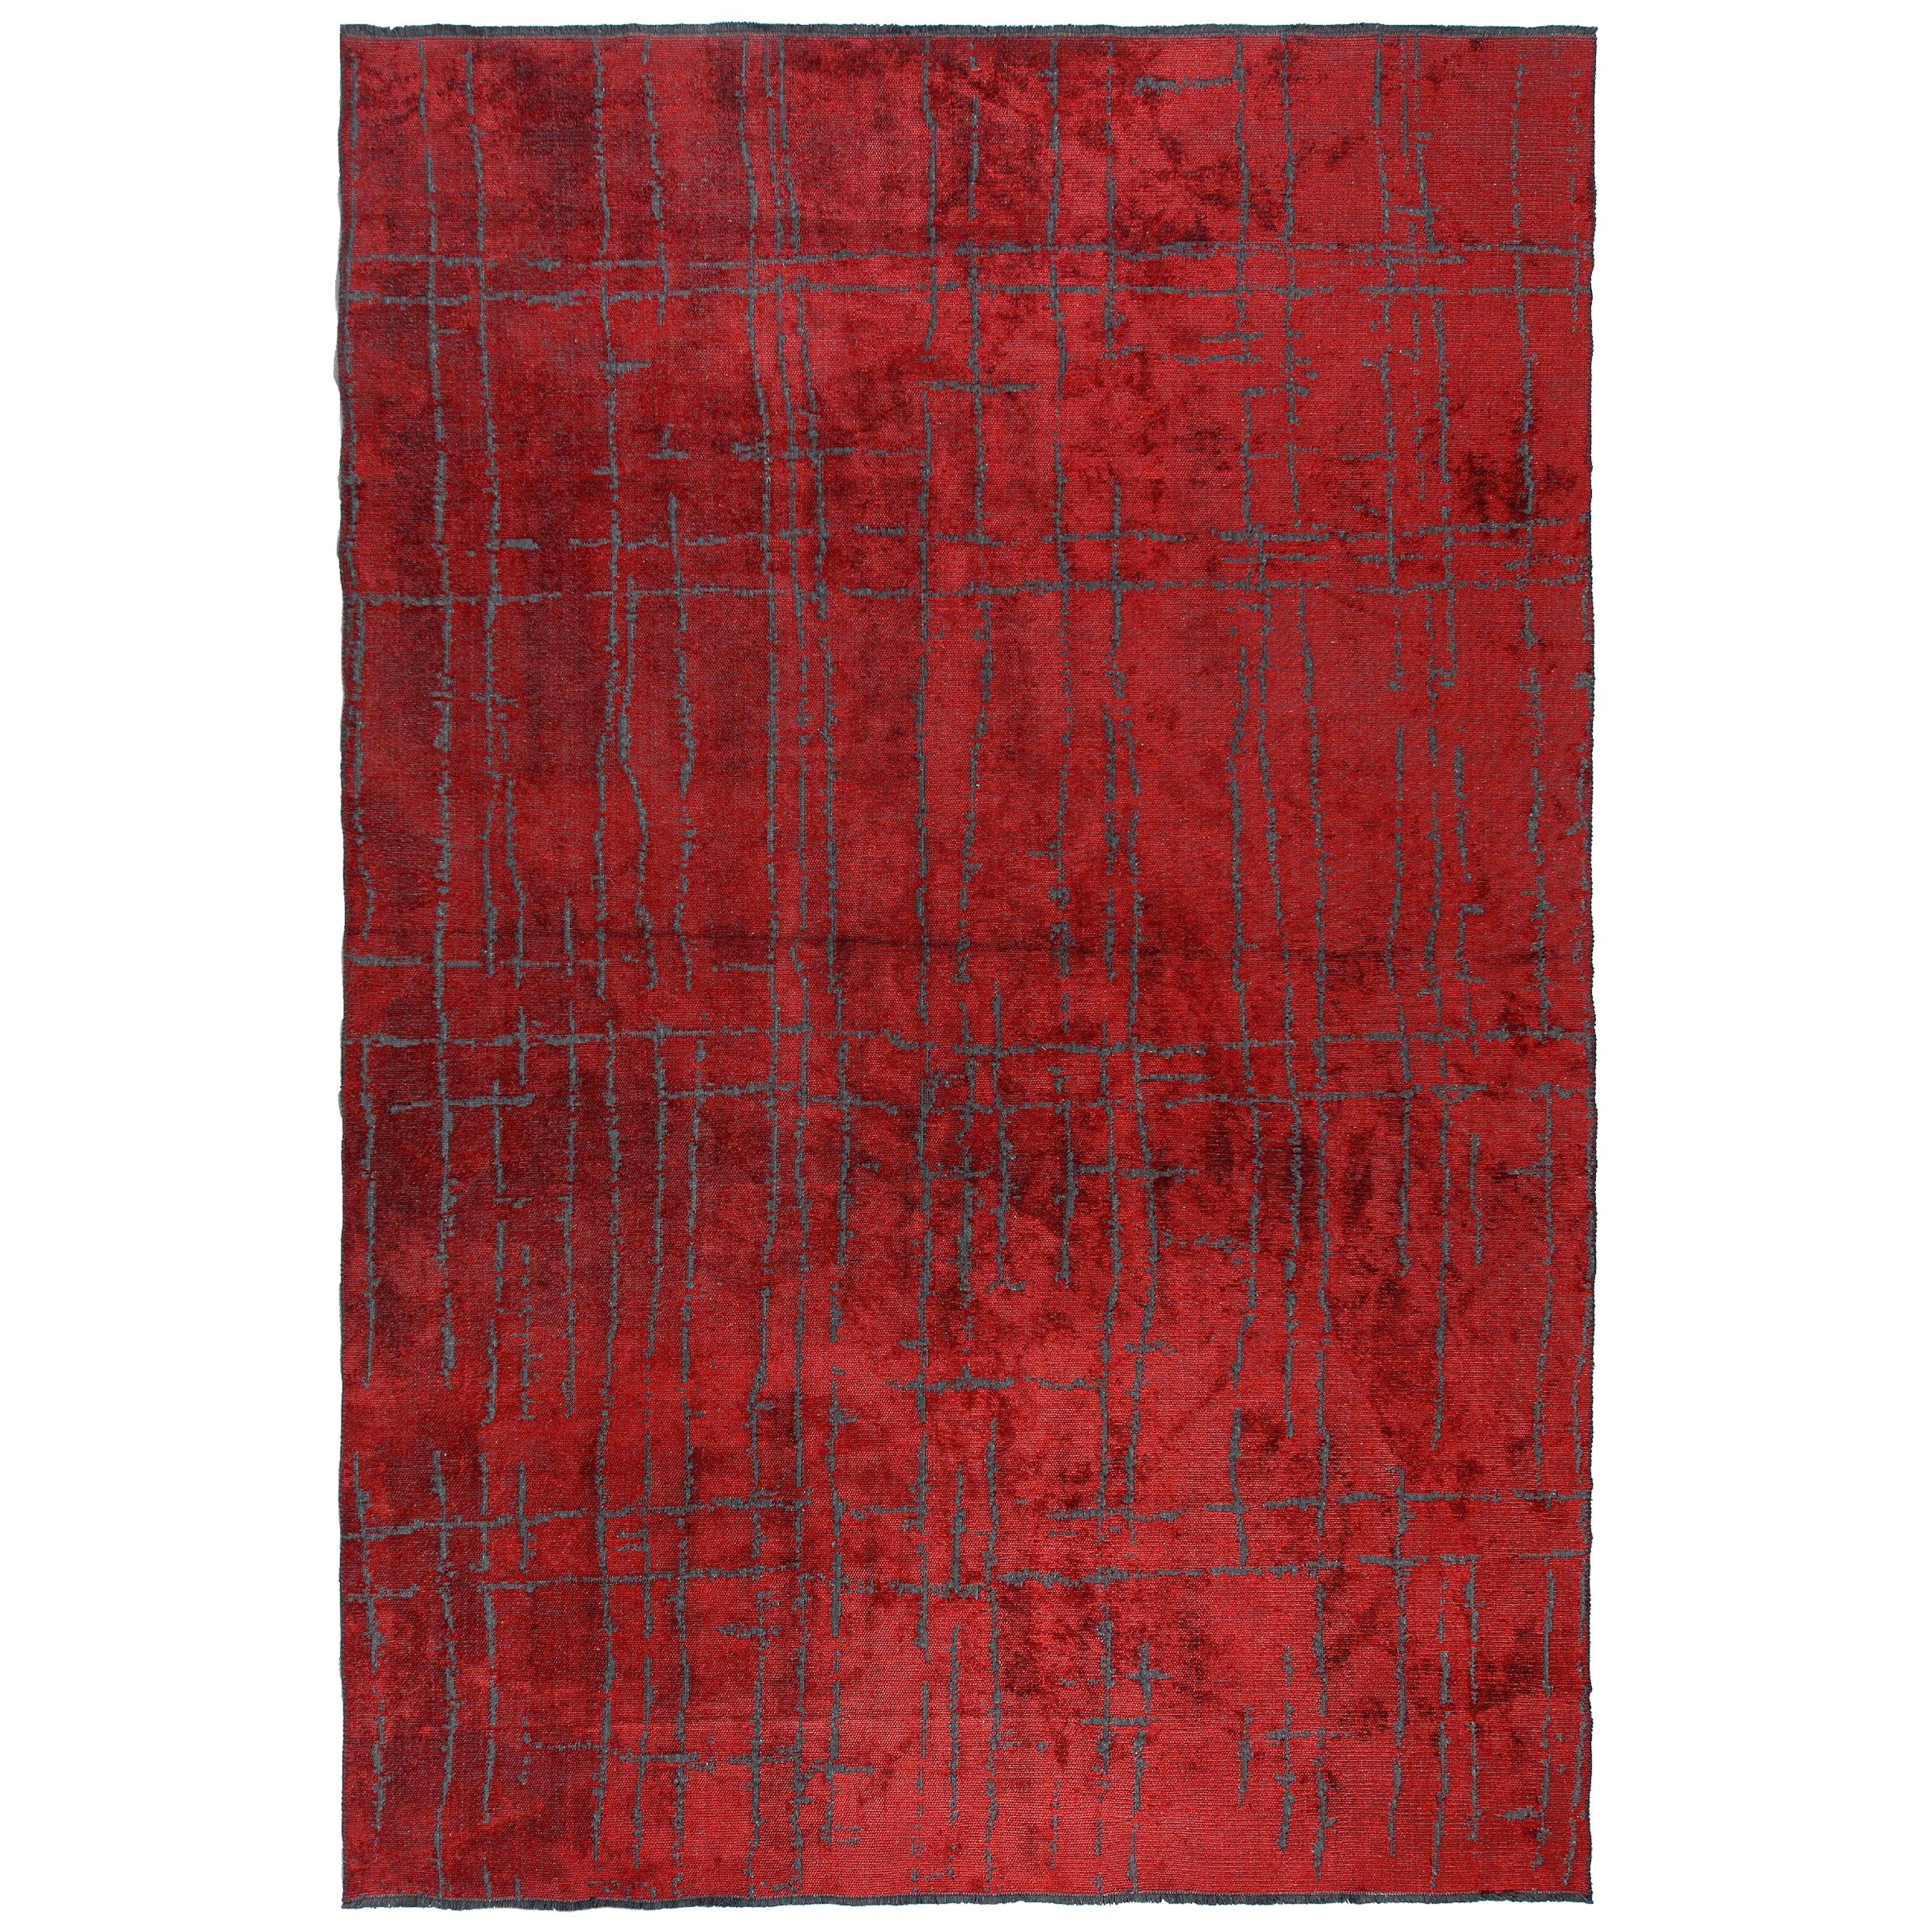 Tapis Semi-Plush rouge, design contemporain, moderniste, luxe et douceur